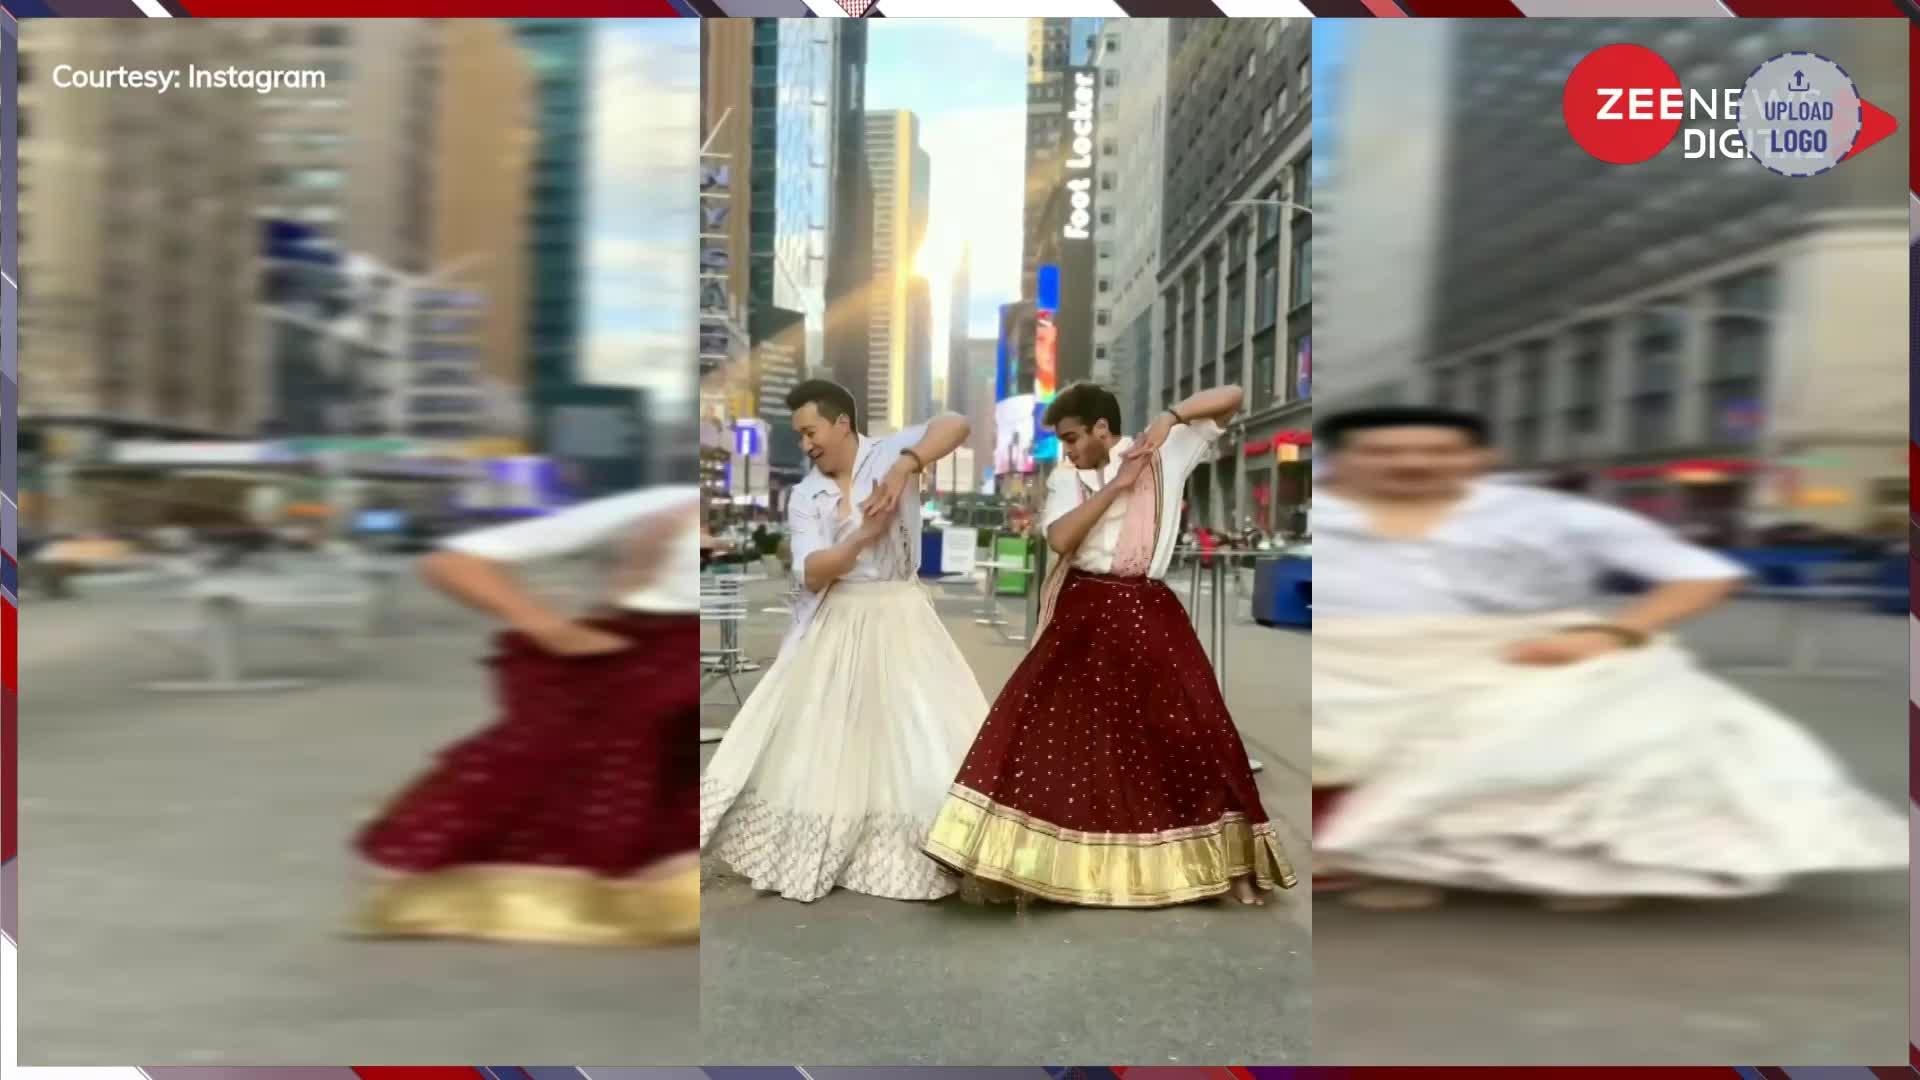 Viral: न्यूयॉर्क की सड़कों पर लहंगा पहने 2 लड़कों ने किया 'डोला रे डोला'.. देख झूम उठे लोग